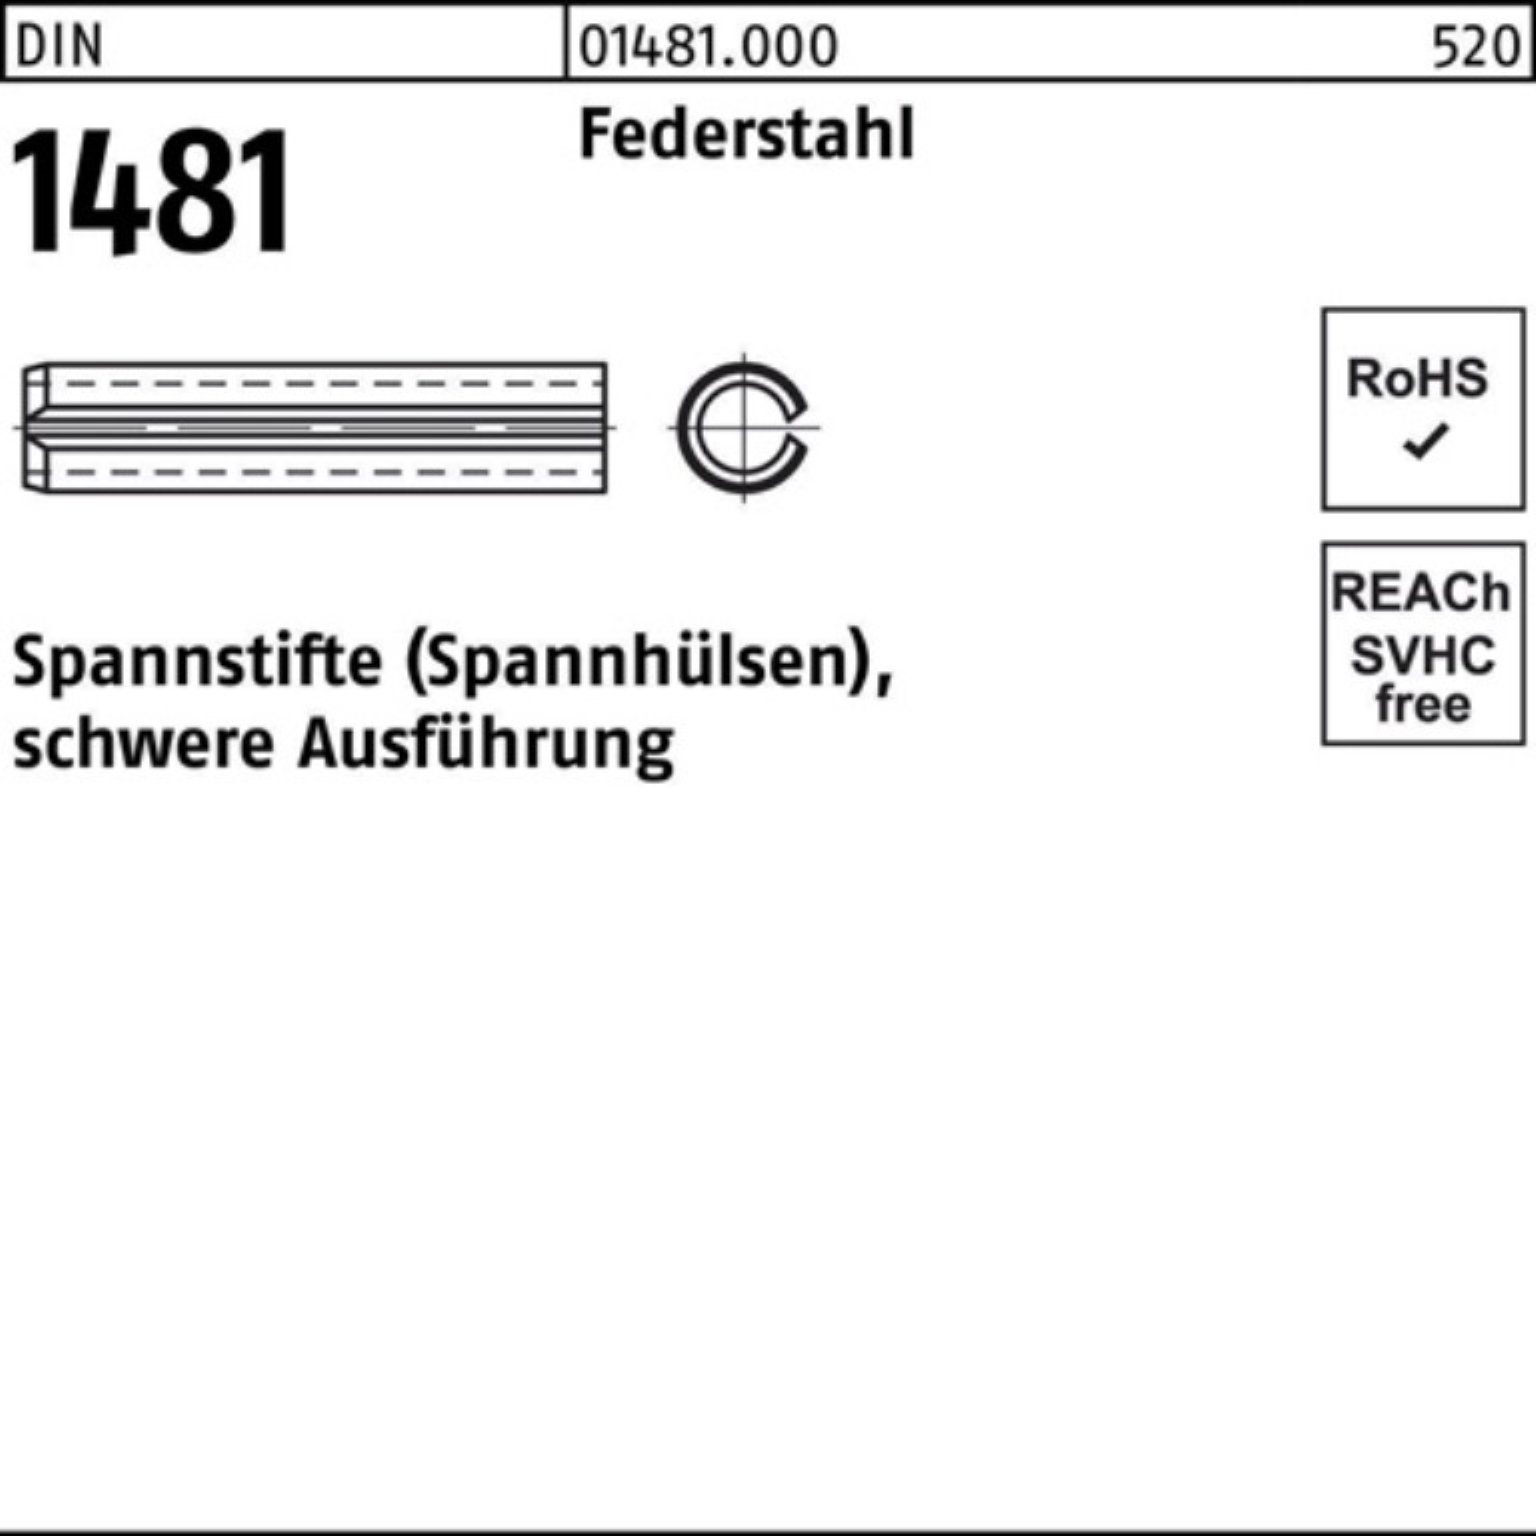 Reyher Pack 28x 100er schwere DIN Ausführung Spannstift 1481 1 28 Spannstift Federstahl